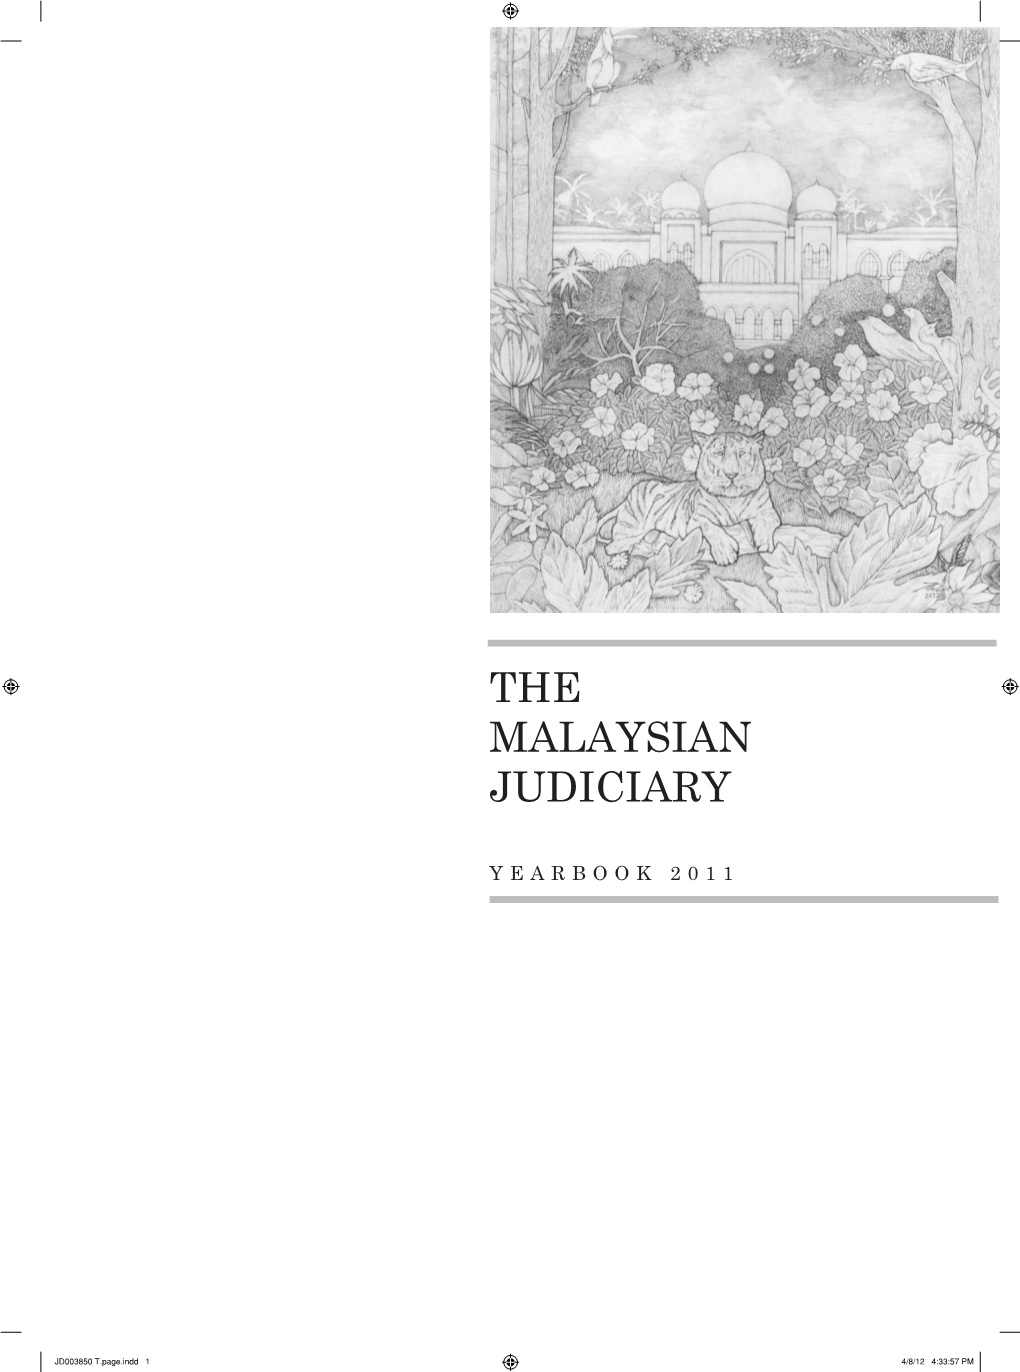 The Malaysian Judiciary